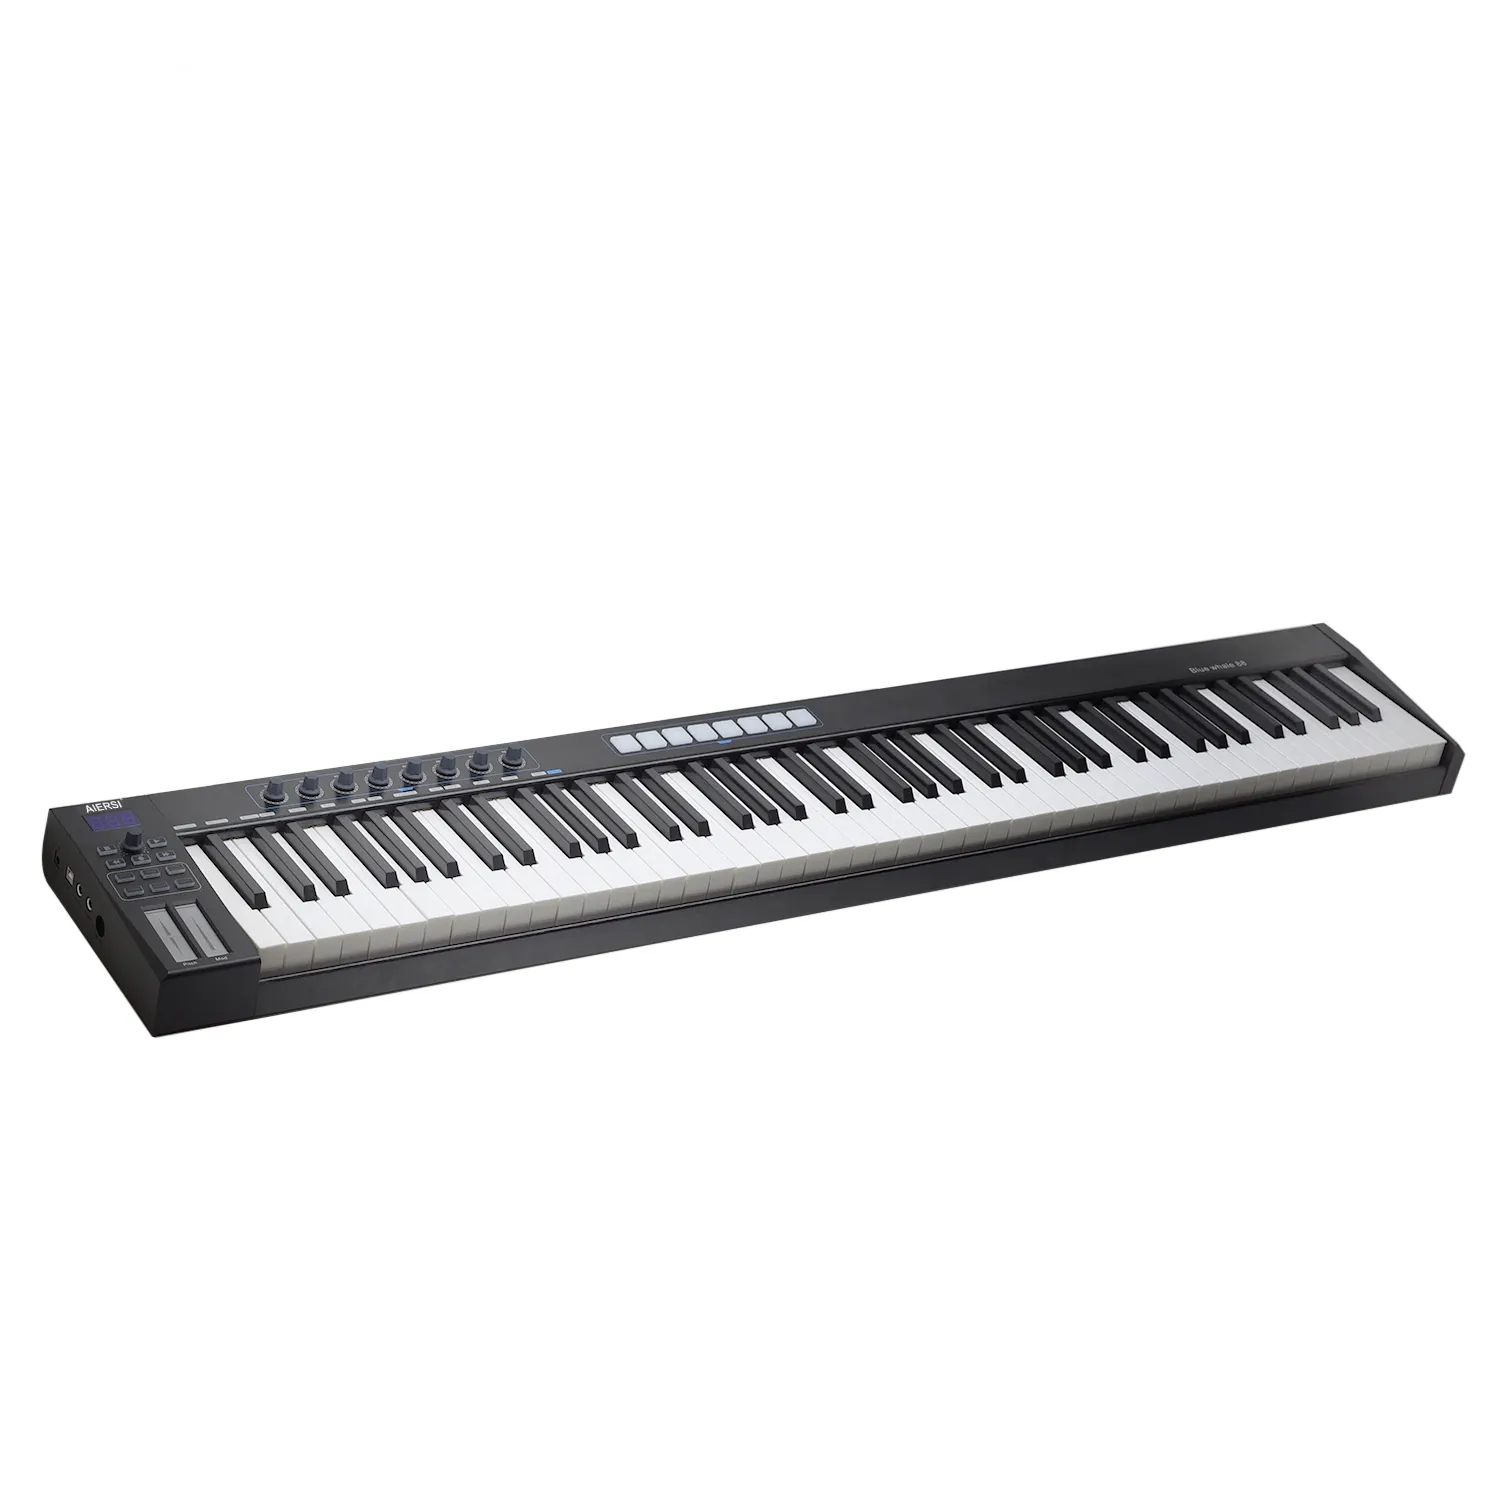 Tastiera MIDI master professionale con pannello in alluminio spazzolato 88 tasti semi-ponderati